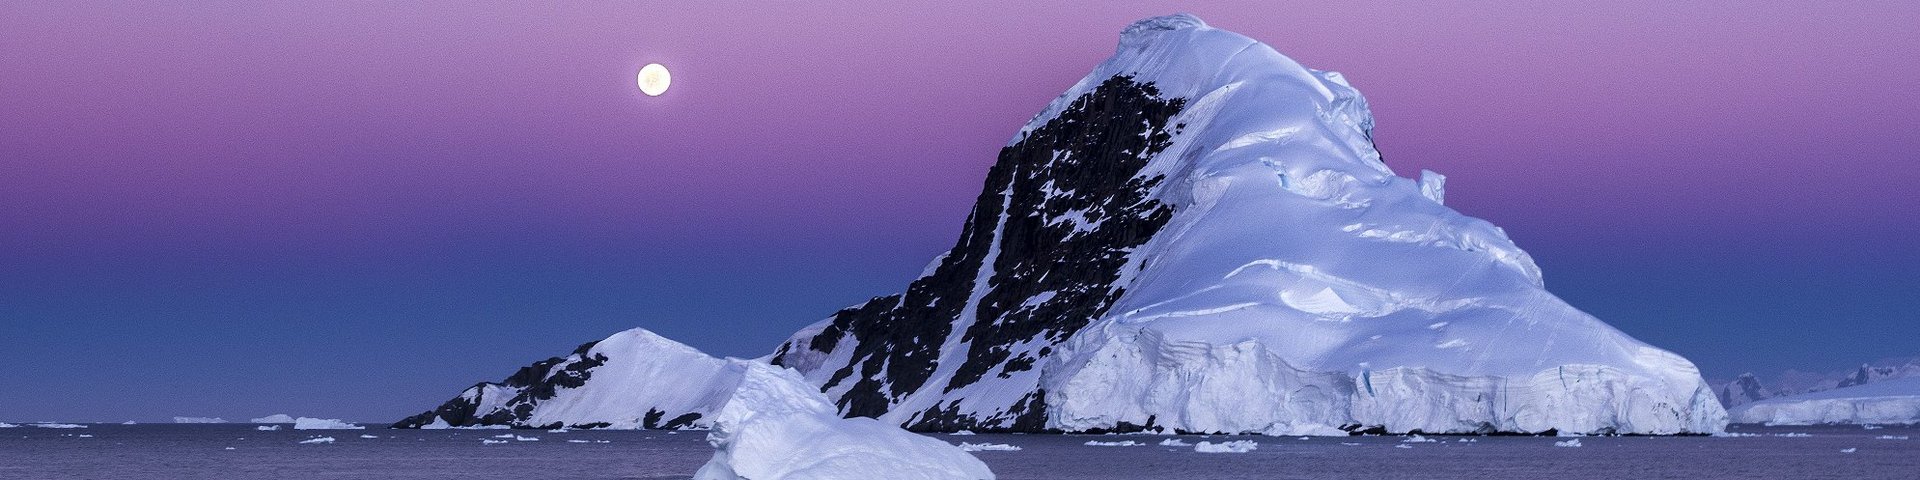 Abendstimmung in der Antarktis